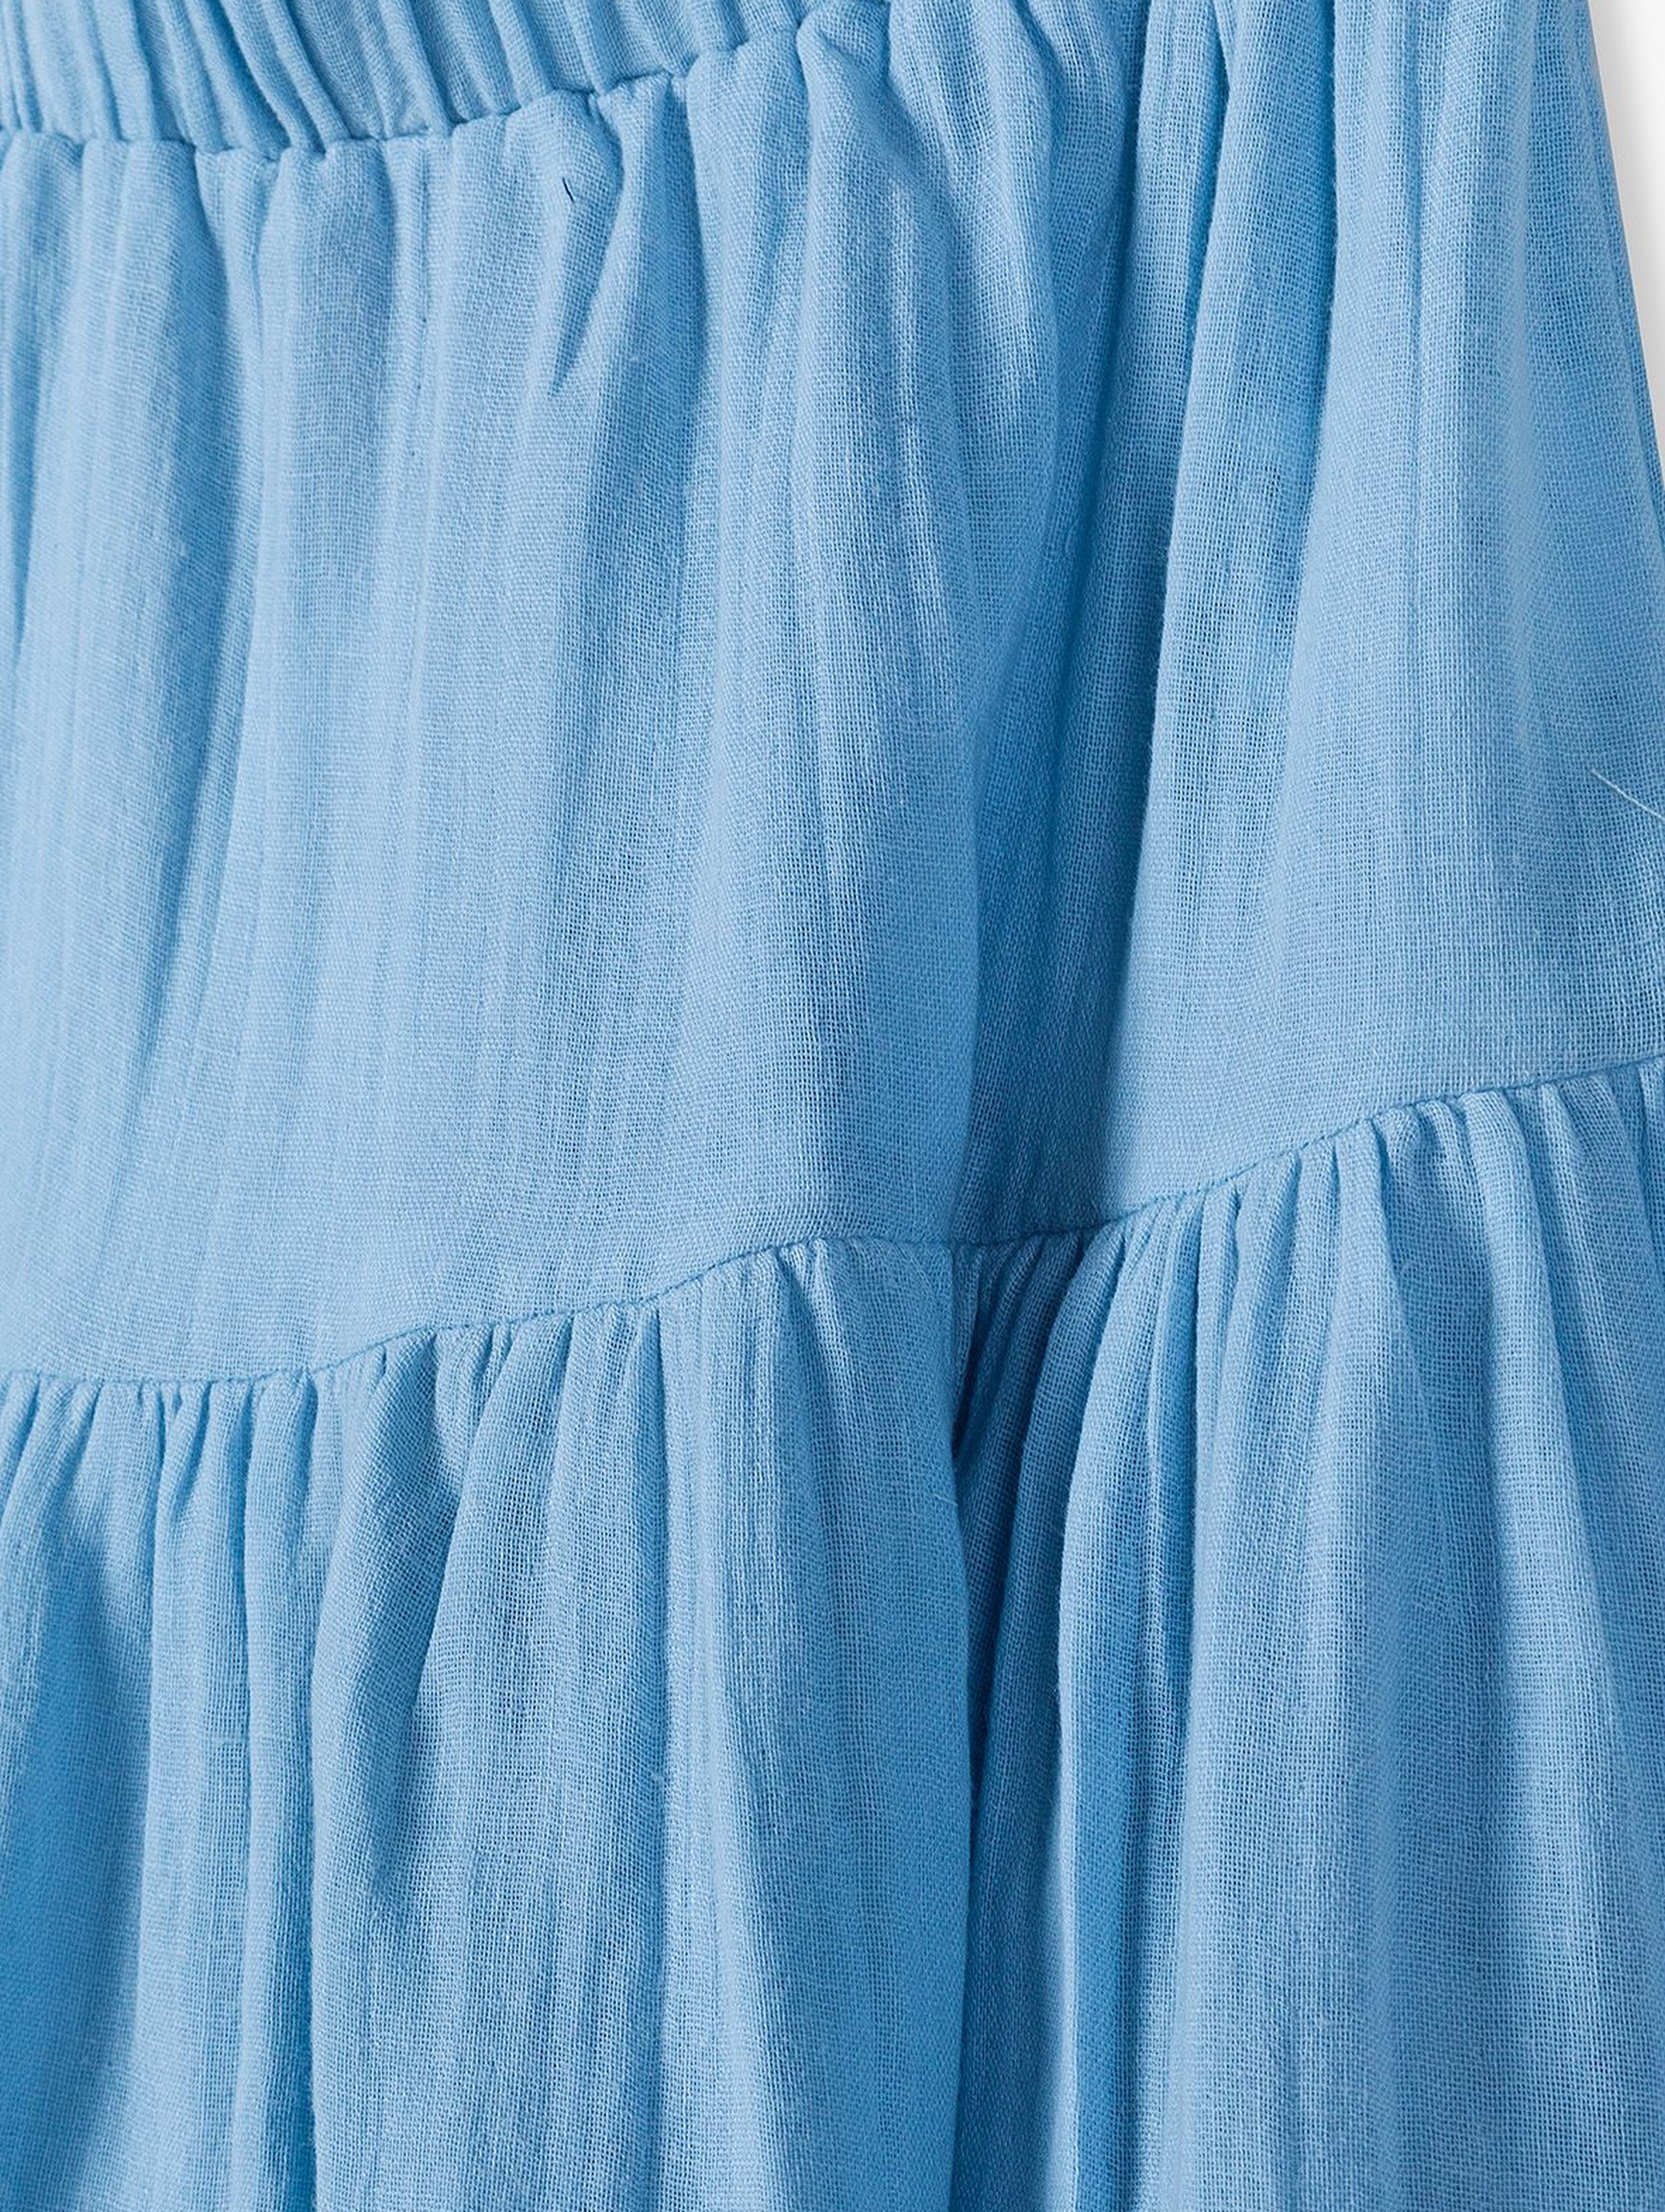 Dzianinowa spódnica dla dziewczynki - niebieska